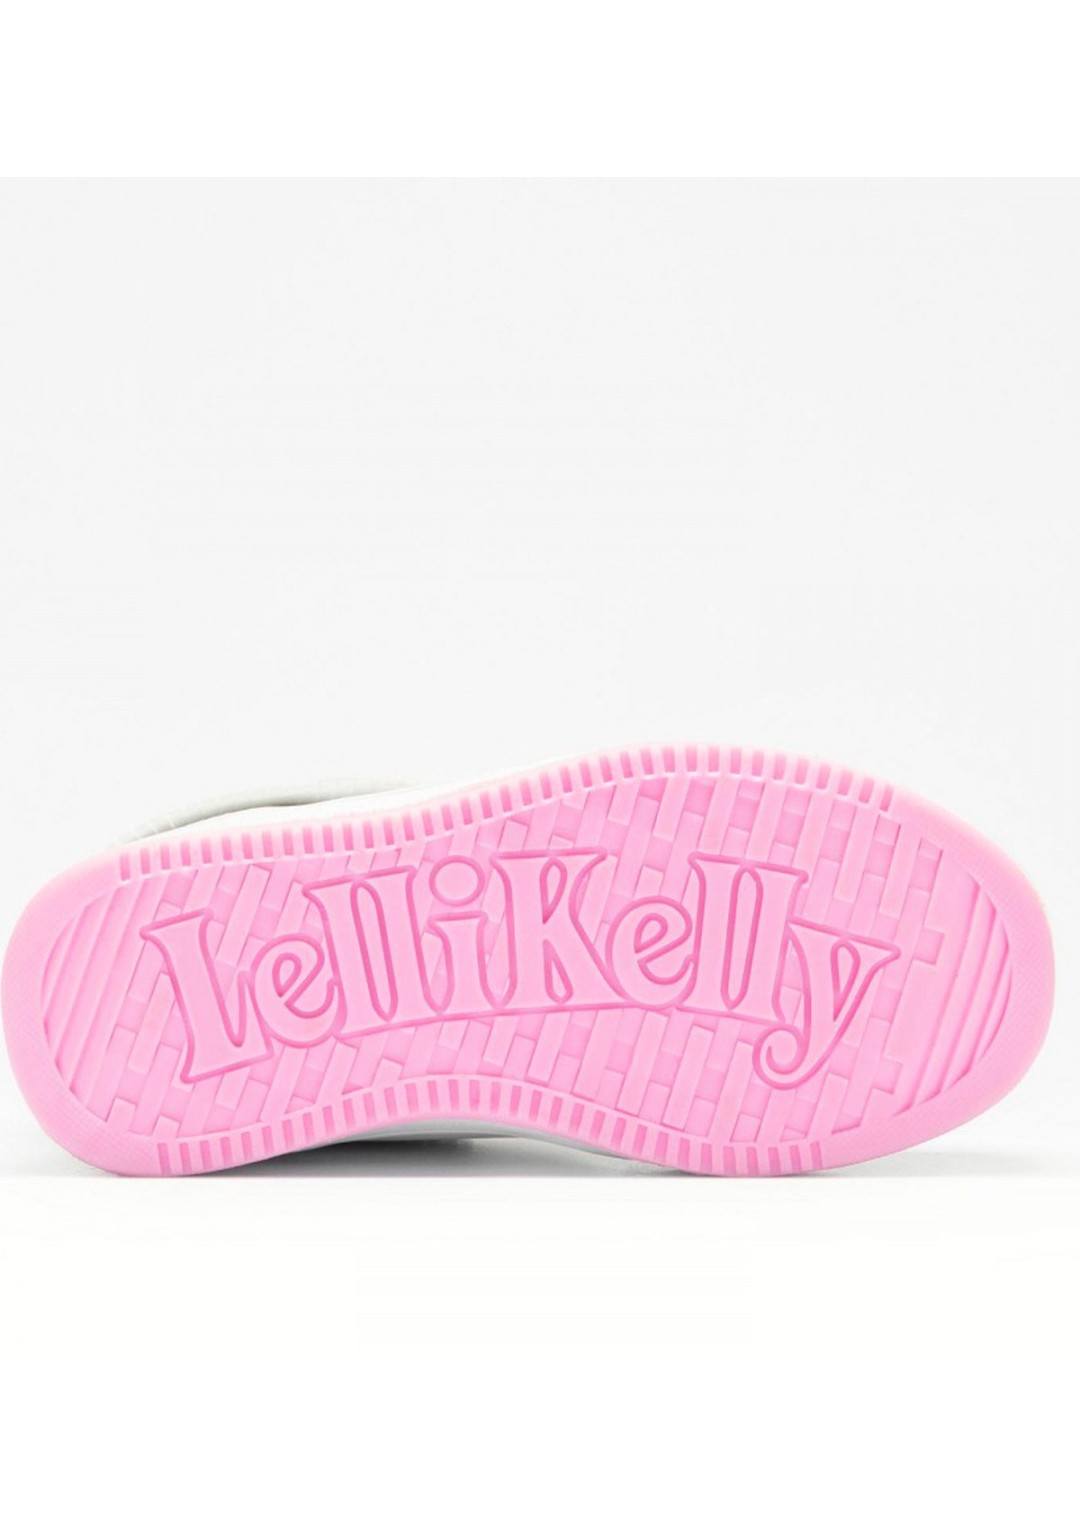 Lelli Kelly - Sneaker Frangette - Bambine e ragazze - LKAE8084